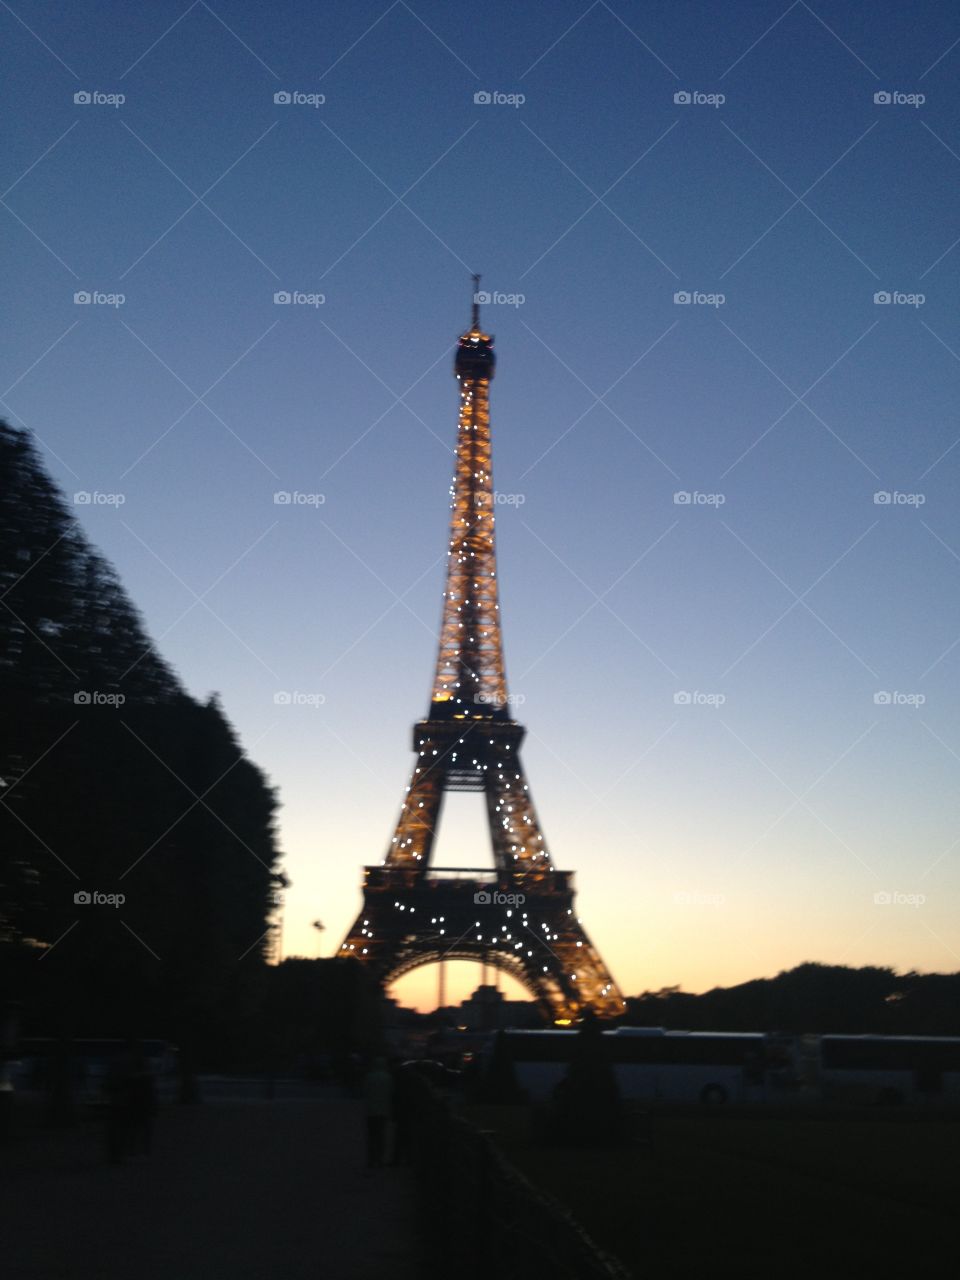 Eiffel Tower at Night. The Eiffel Tower at Night